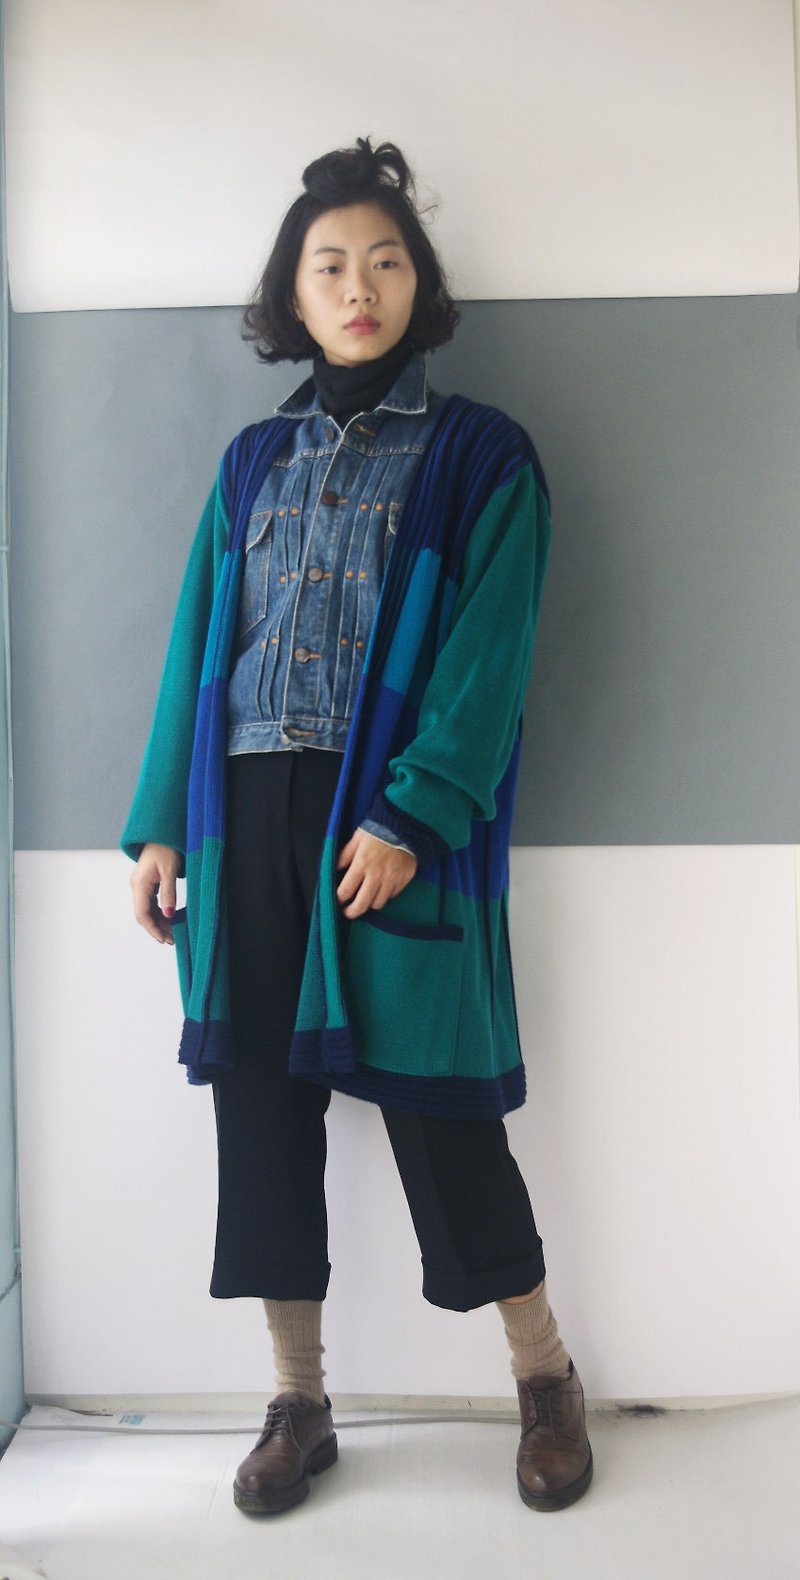 4.5studio-寻宝古着-瑞典制品牌KRISS蓝绿色块针织开襟外套 - 女装针织衫/毛衣 - 聚酯纤维 蓝色